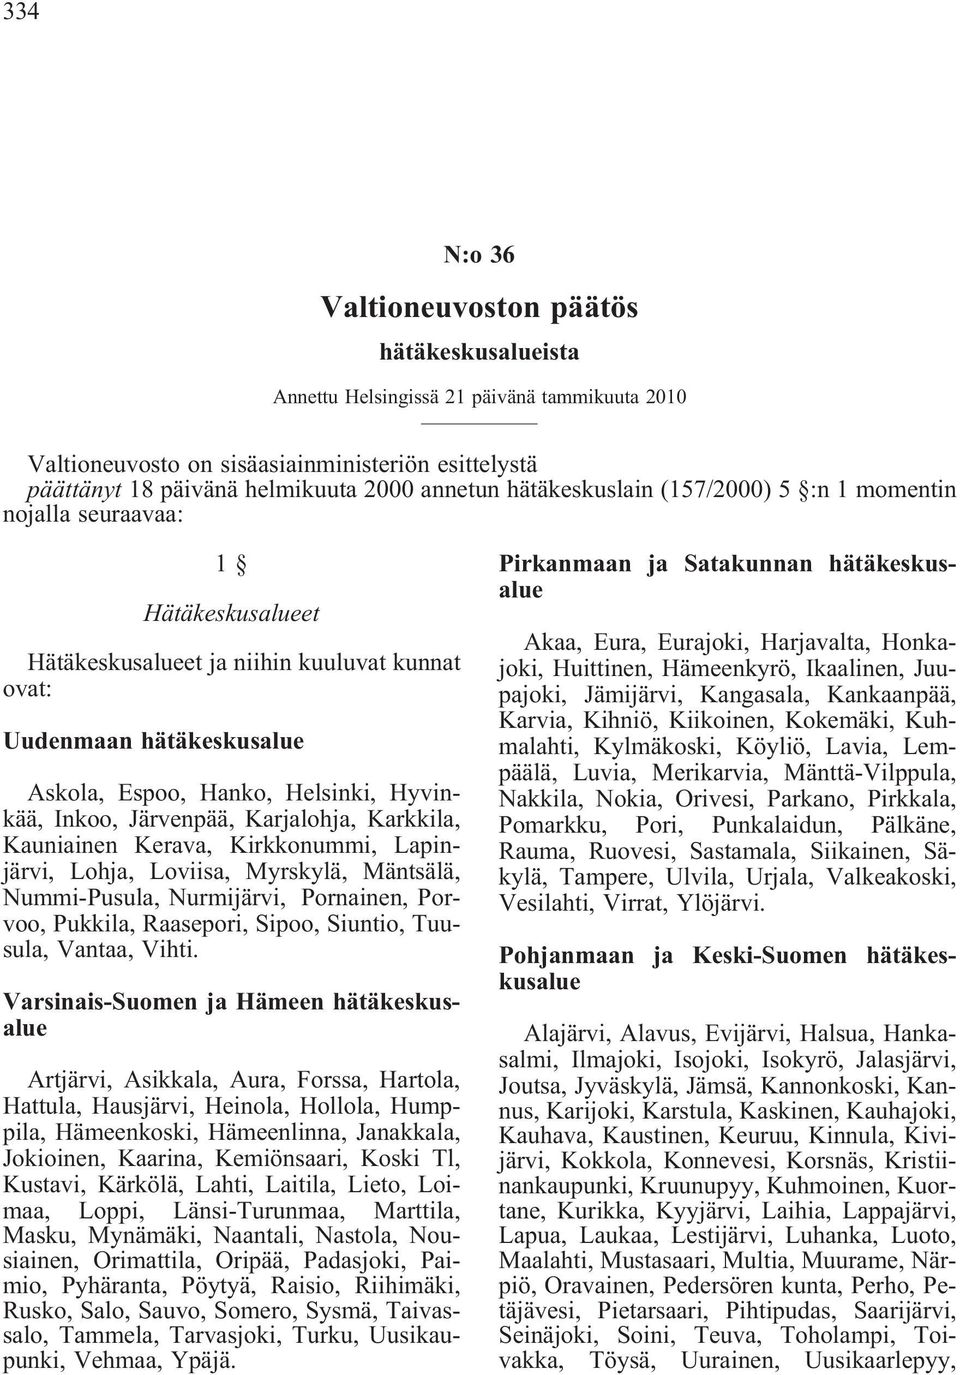 Inkoo, Järvenpää, Karjalohja, Karkkila, Kauniainen Kerava, Kirkkonummi, Lapinjärvi, Lohja, Loviisa, Myrskylä, Mäntsälä, Nummi-Pusula, Nurmijärvi, Pornainen, Porvoo, Pukkila, Raasepori, Sipoo,